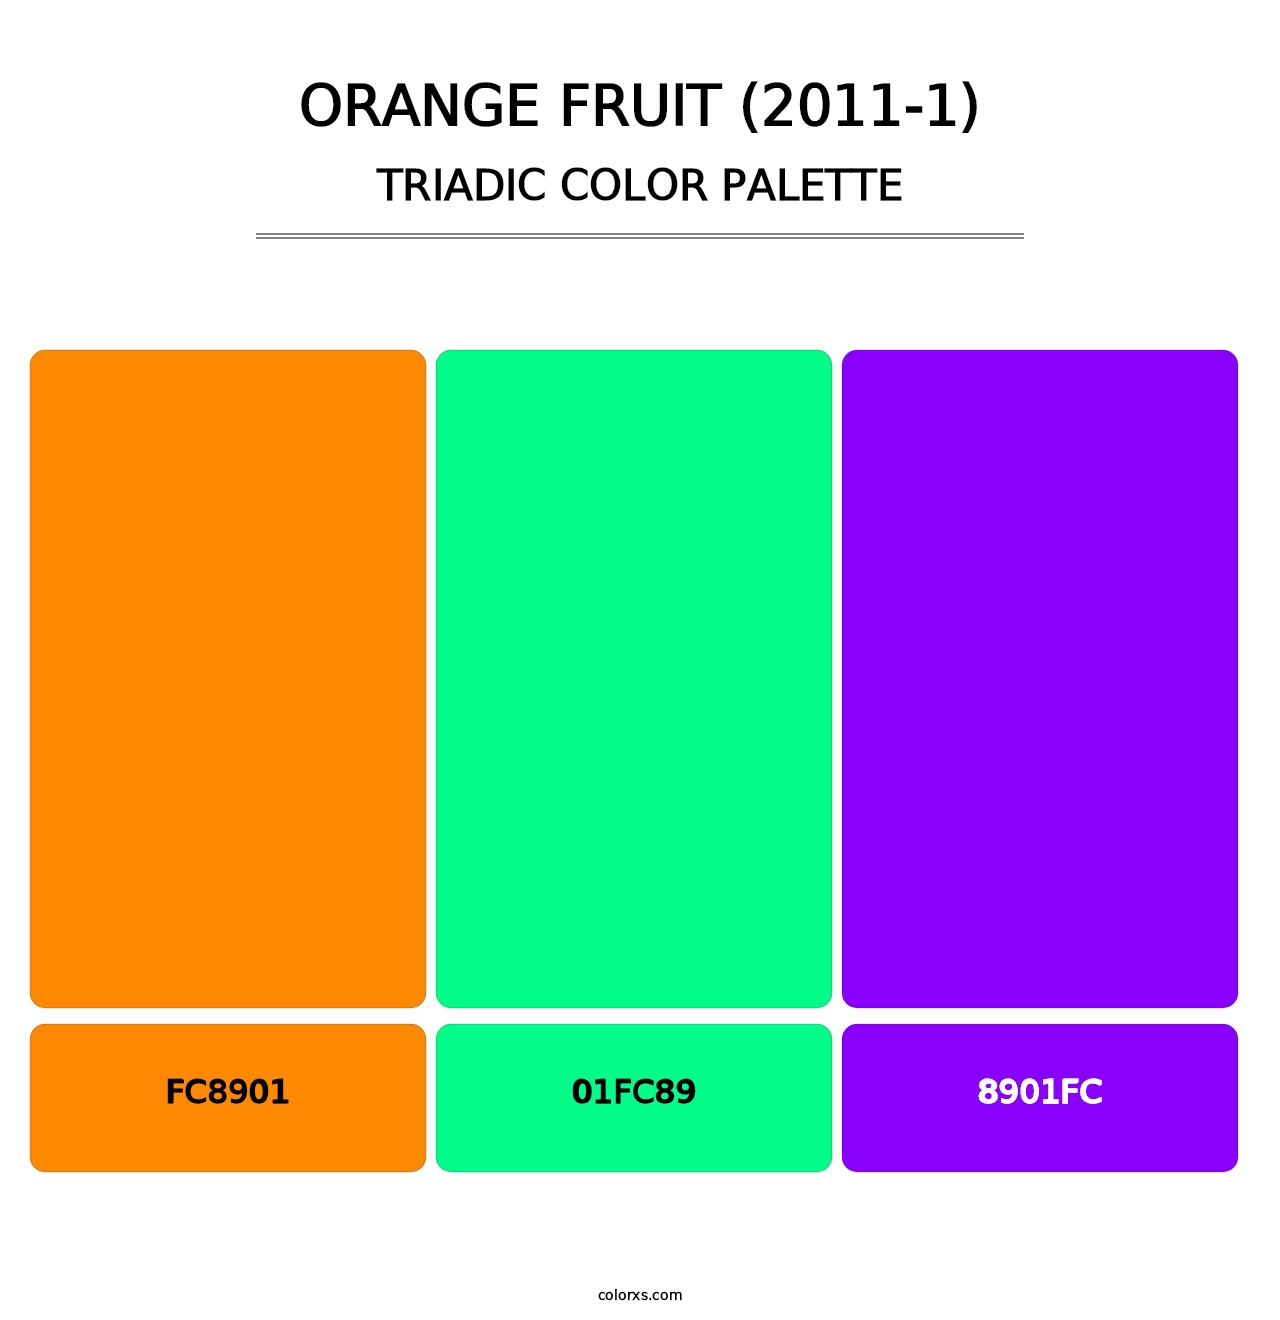 Orange Fruit (2011-1) - Triadic Color Palette